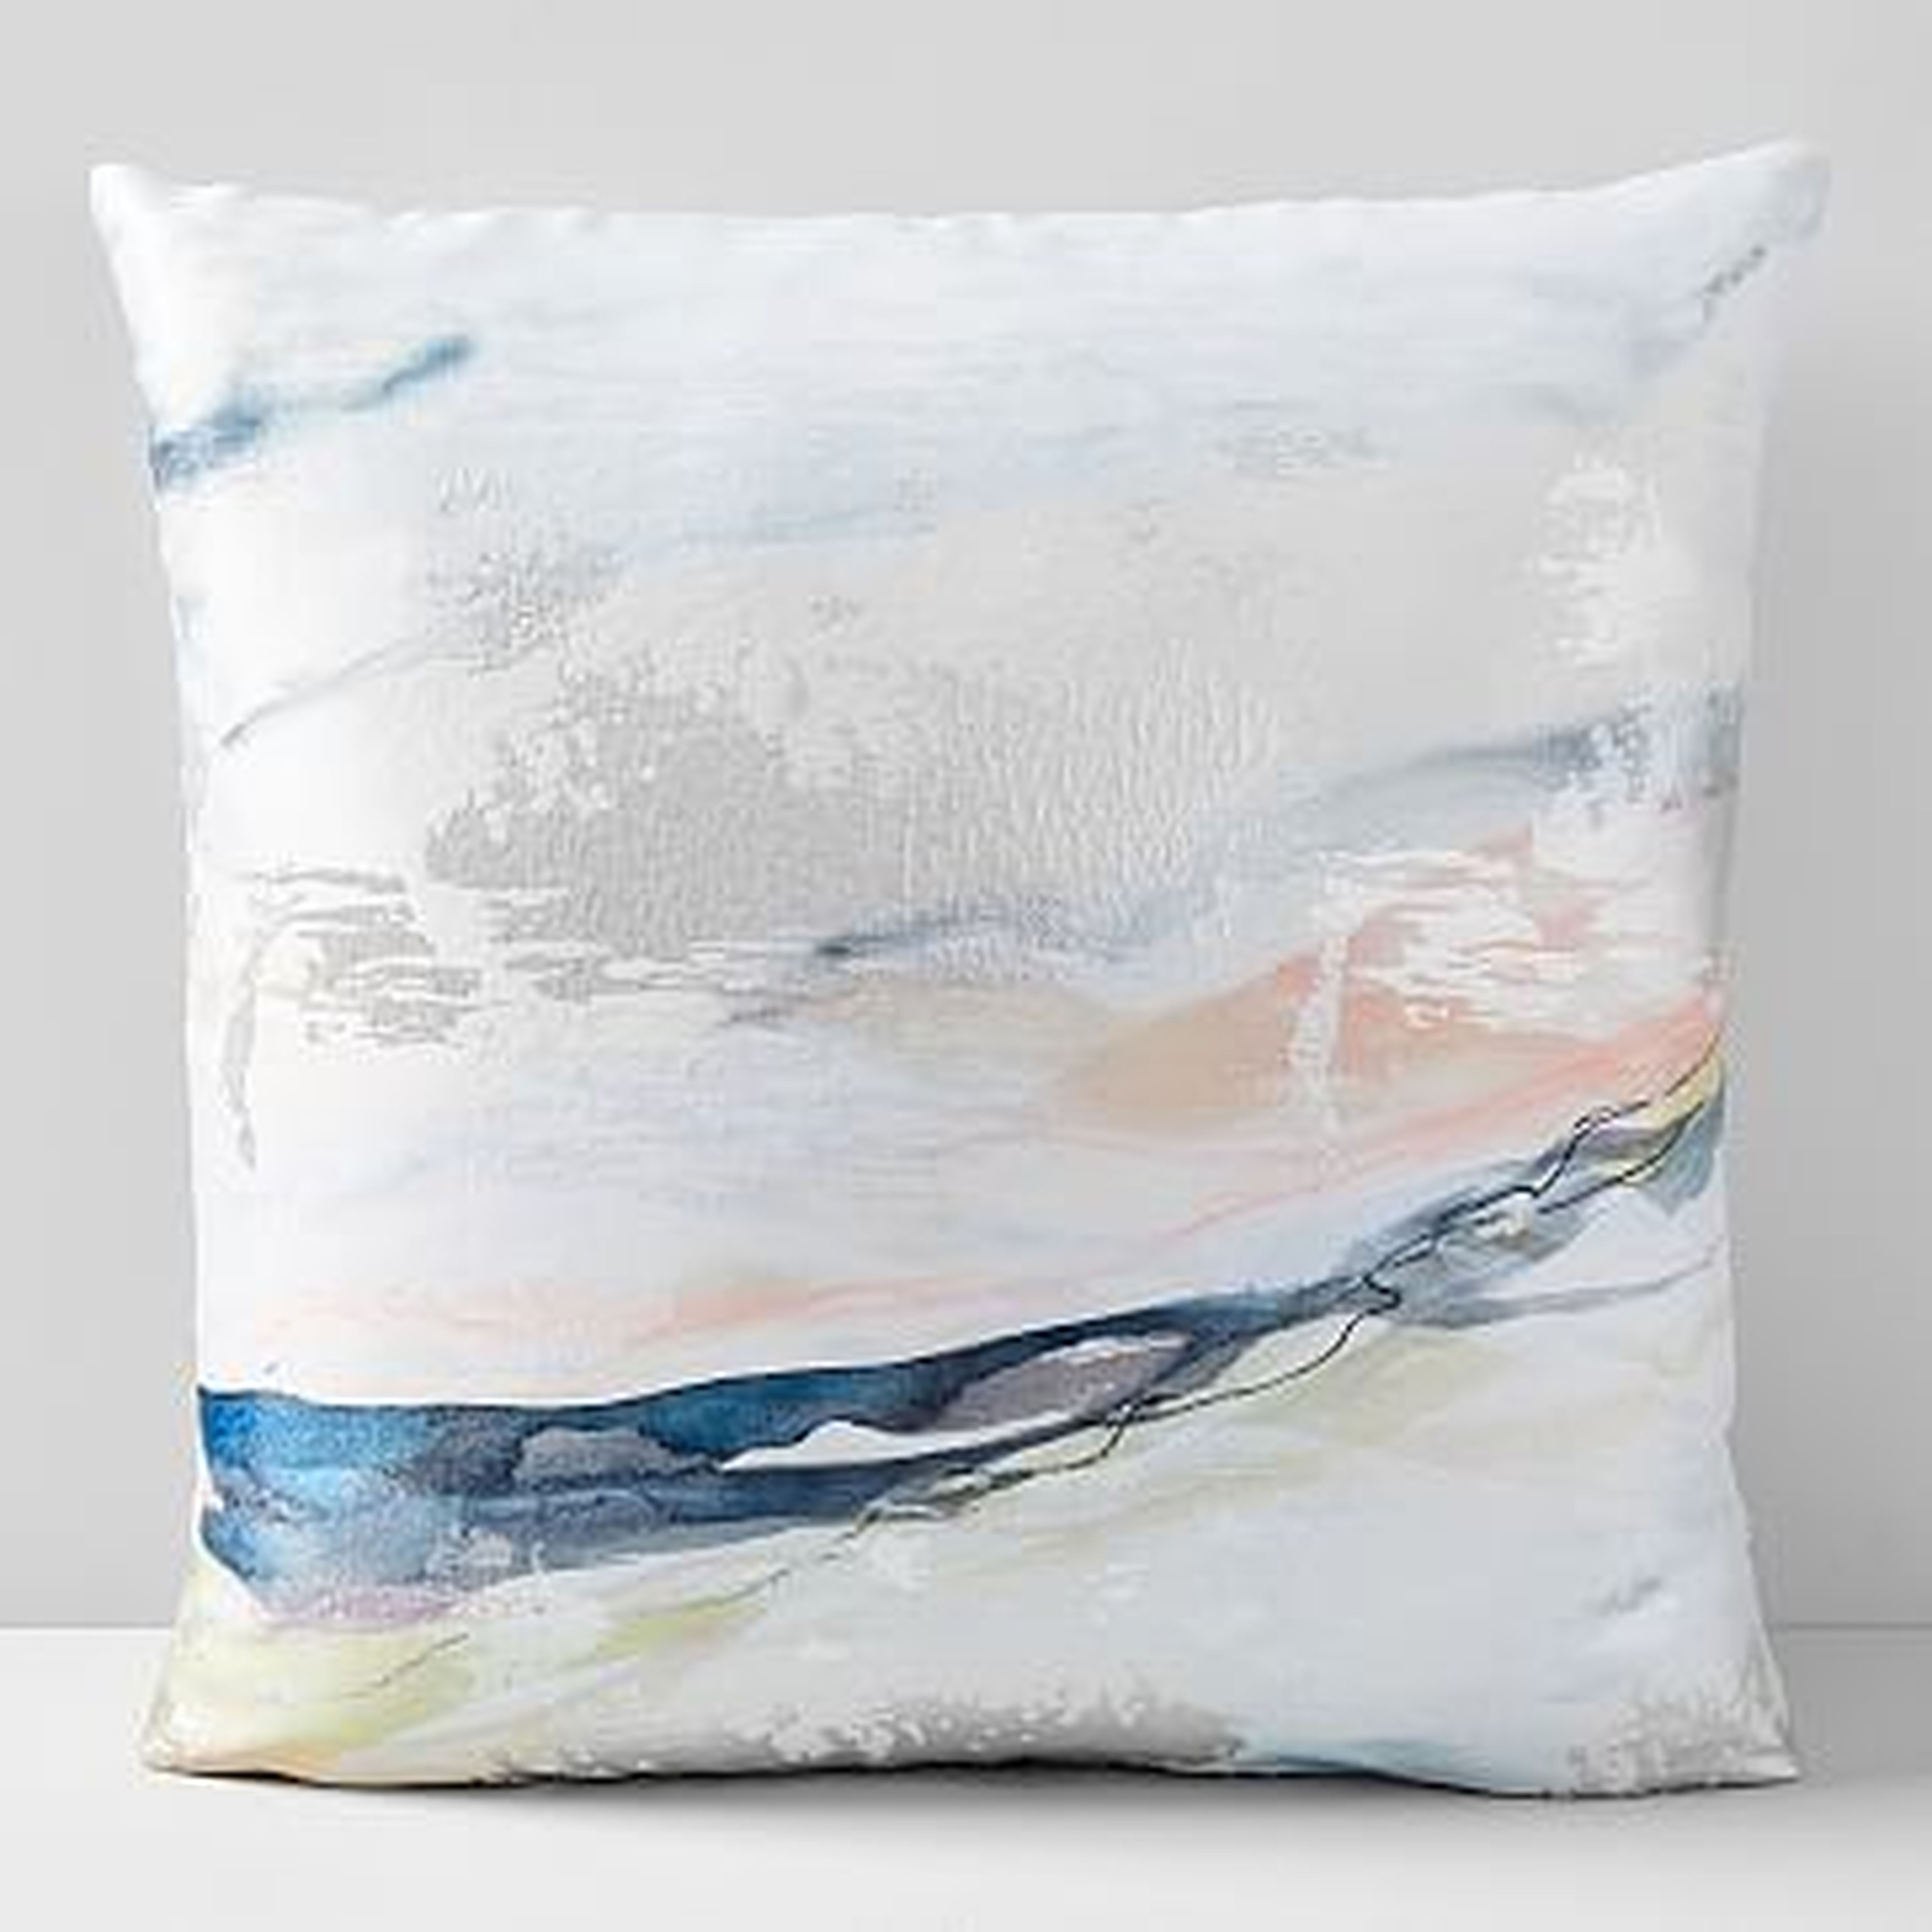 Landscape Dreams Brocade Pillow Case, Multi, 24"x24" - West Elm